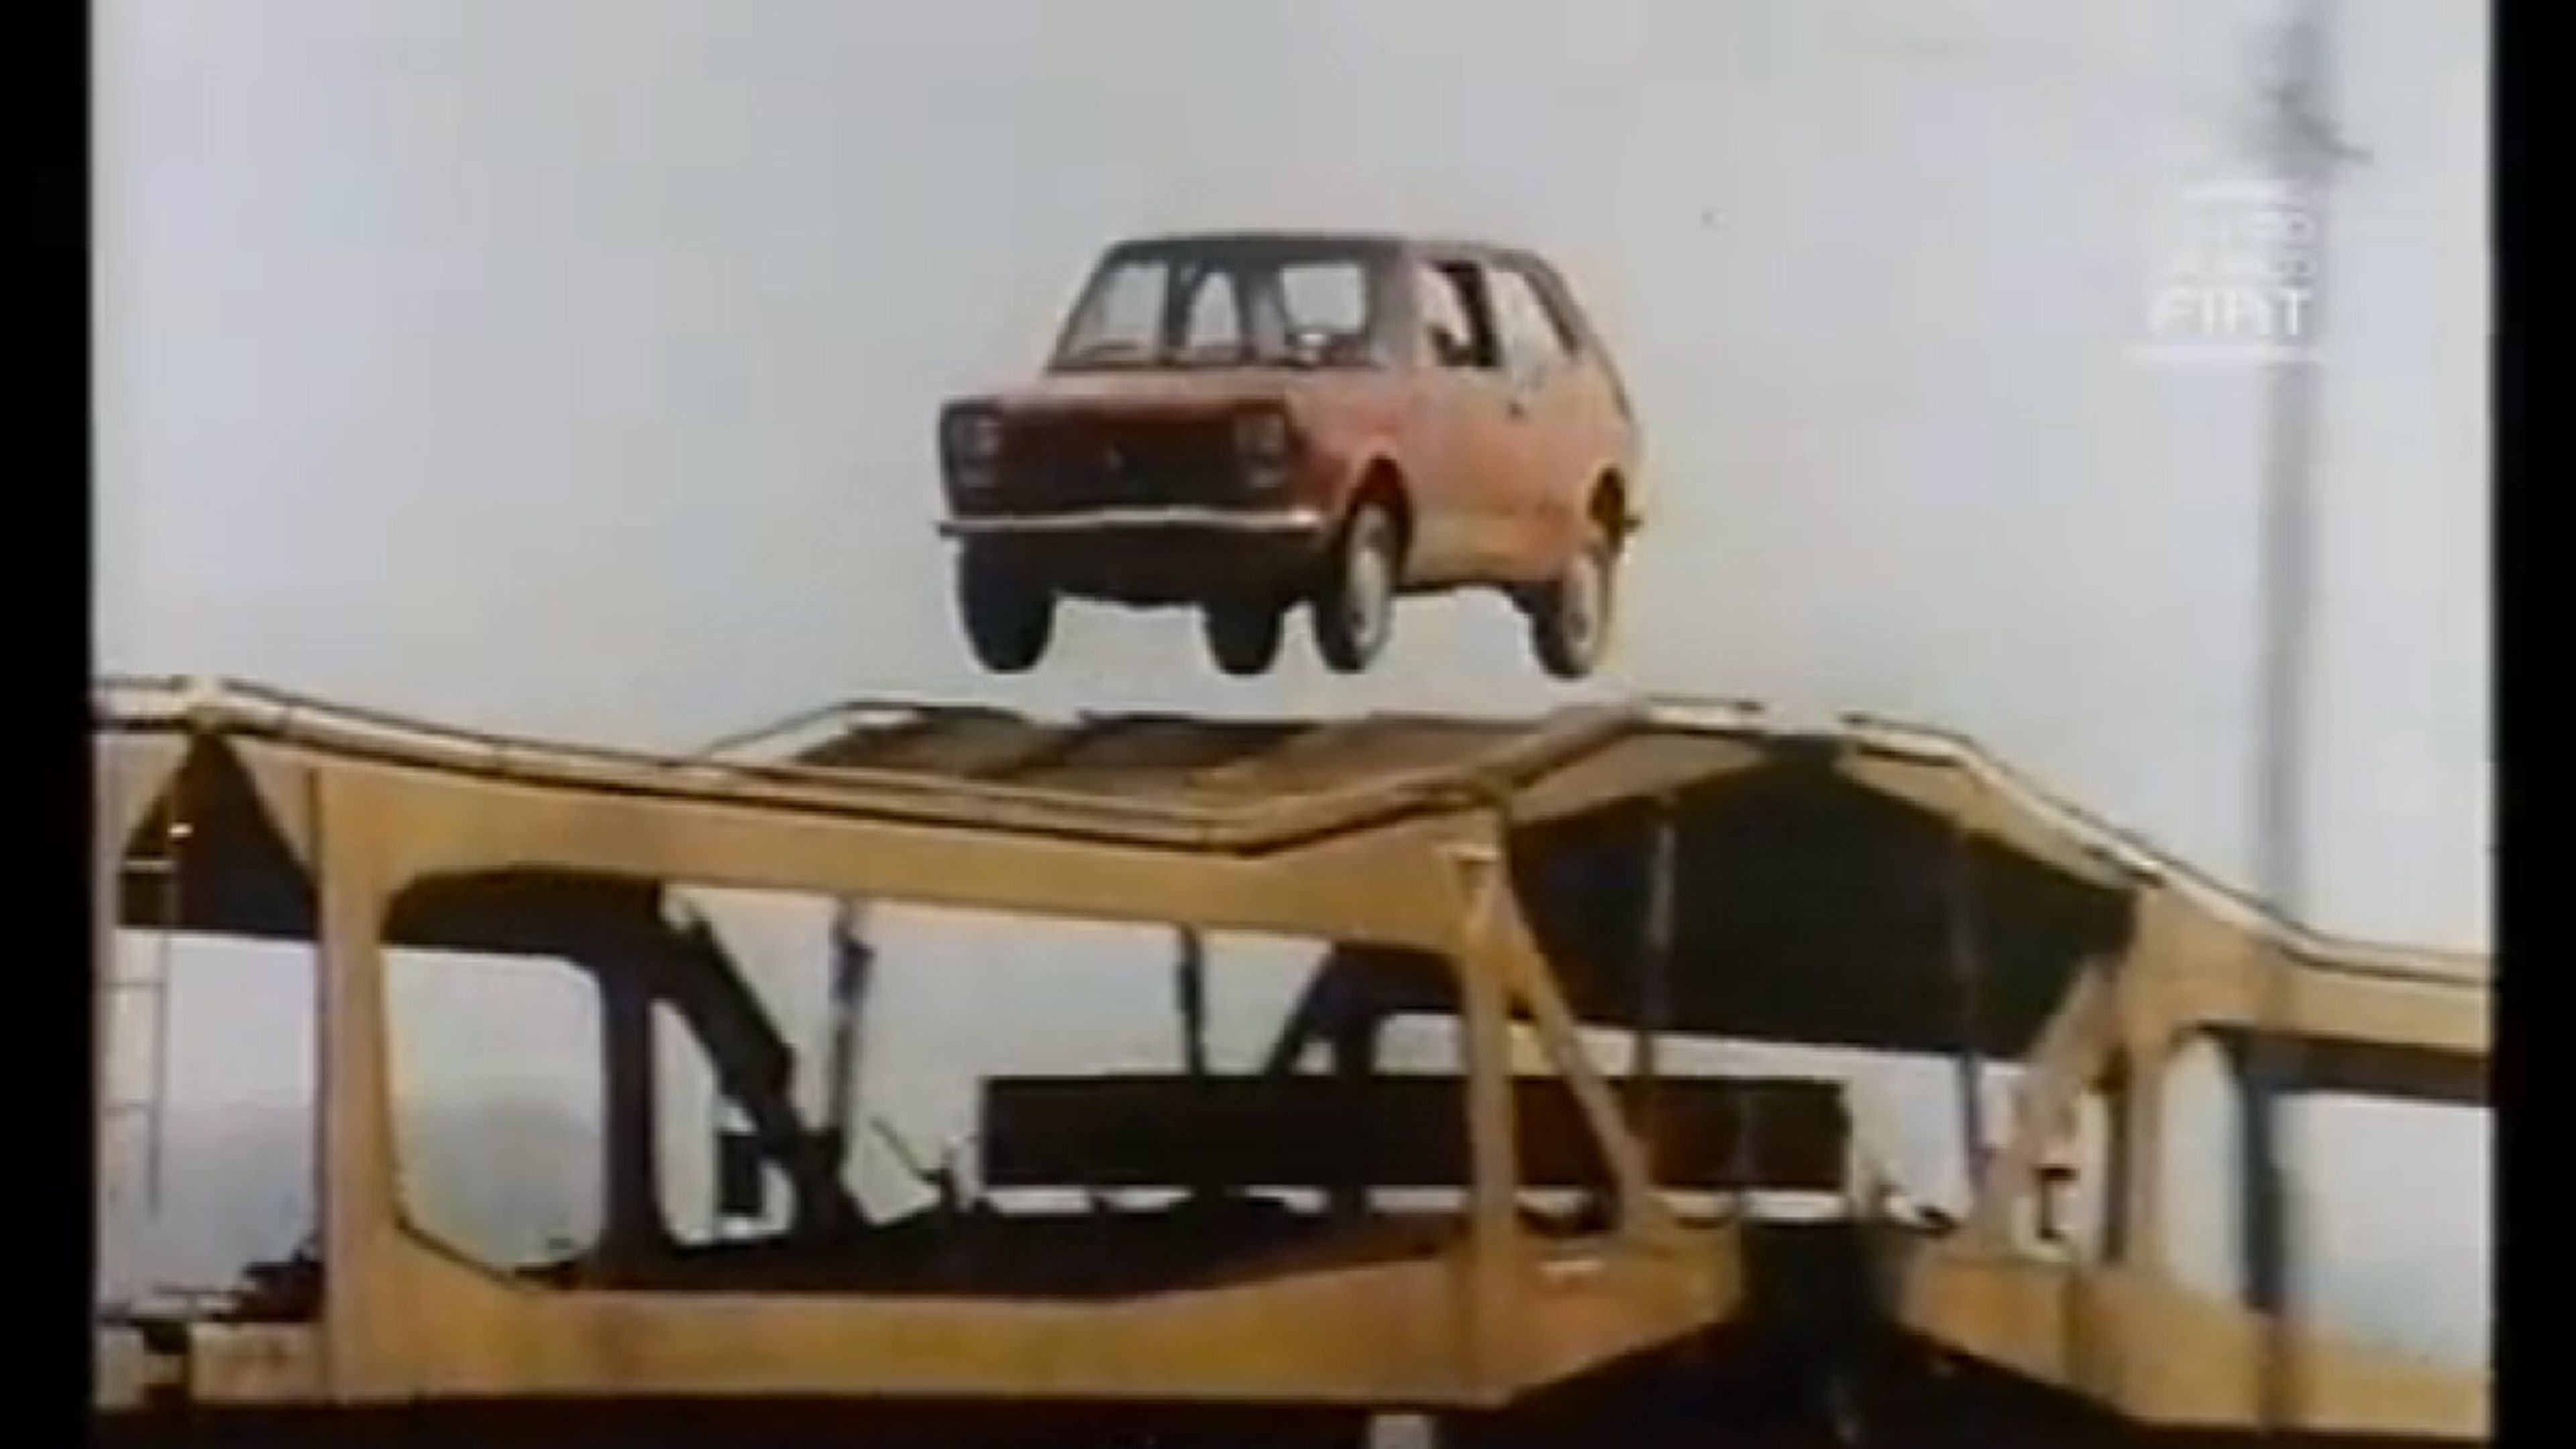 Toma anuncio antiguo cachondo: ¡el Fiat 127 saltarín!